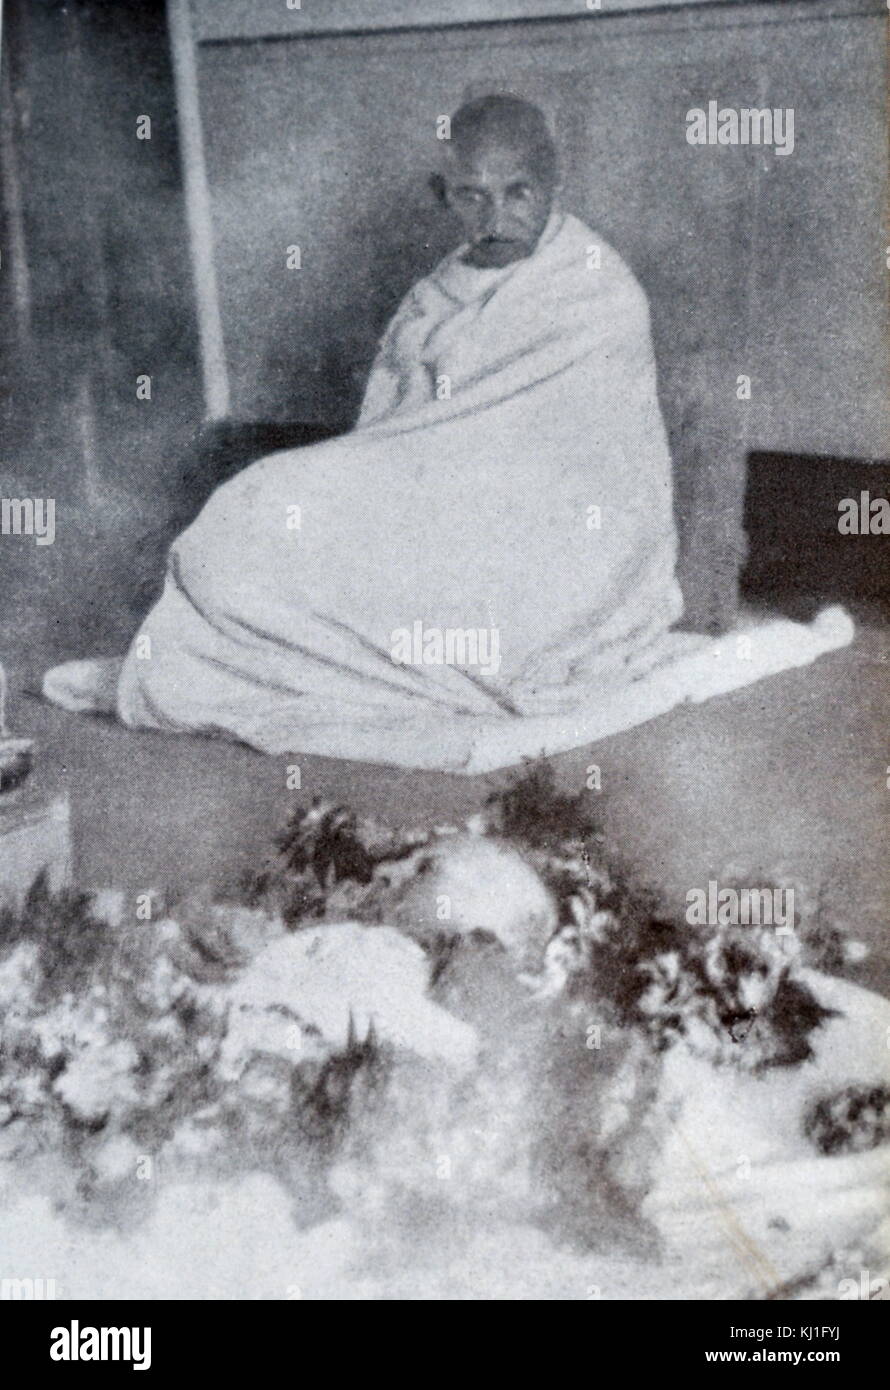 Gandhi sitzt in Trauer durch den Körper seiner Frau Kasturba 1944. Kasturba Gandhi Frau von Mahatma Gandhi am Sterbebett im Palast des Aga Khan, in Pune, Maharashtra. 1944. Der Palast, wurde der Ort, der Internierung für Indiens Unabhängigkeit Führer einschließlich Mahatma Gandhi in 1942-44. Stockfoto